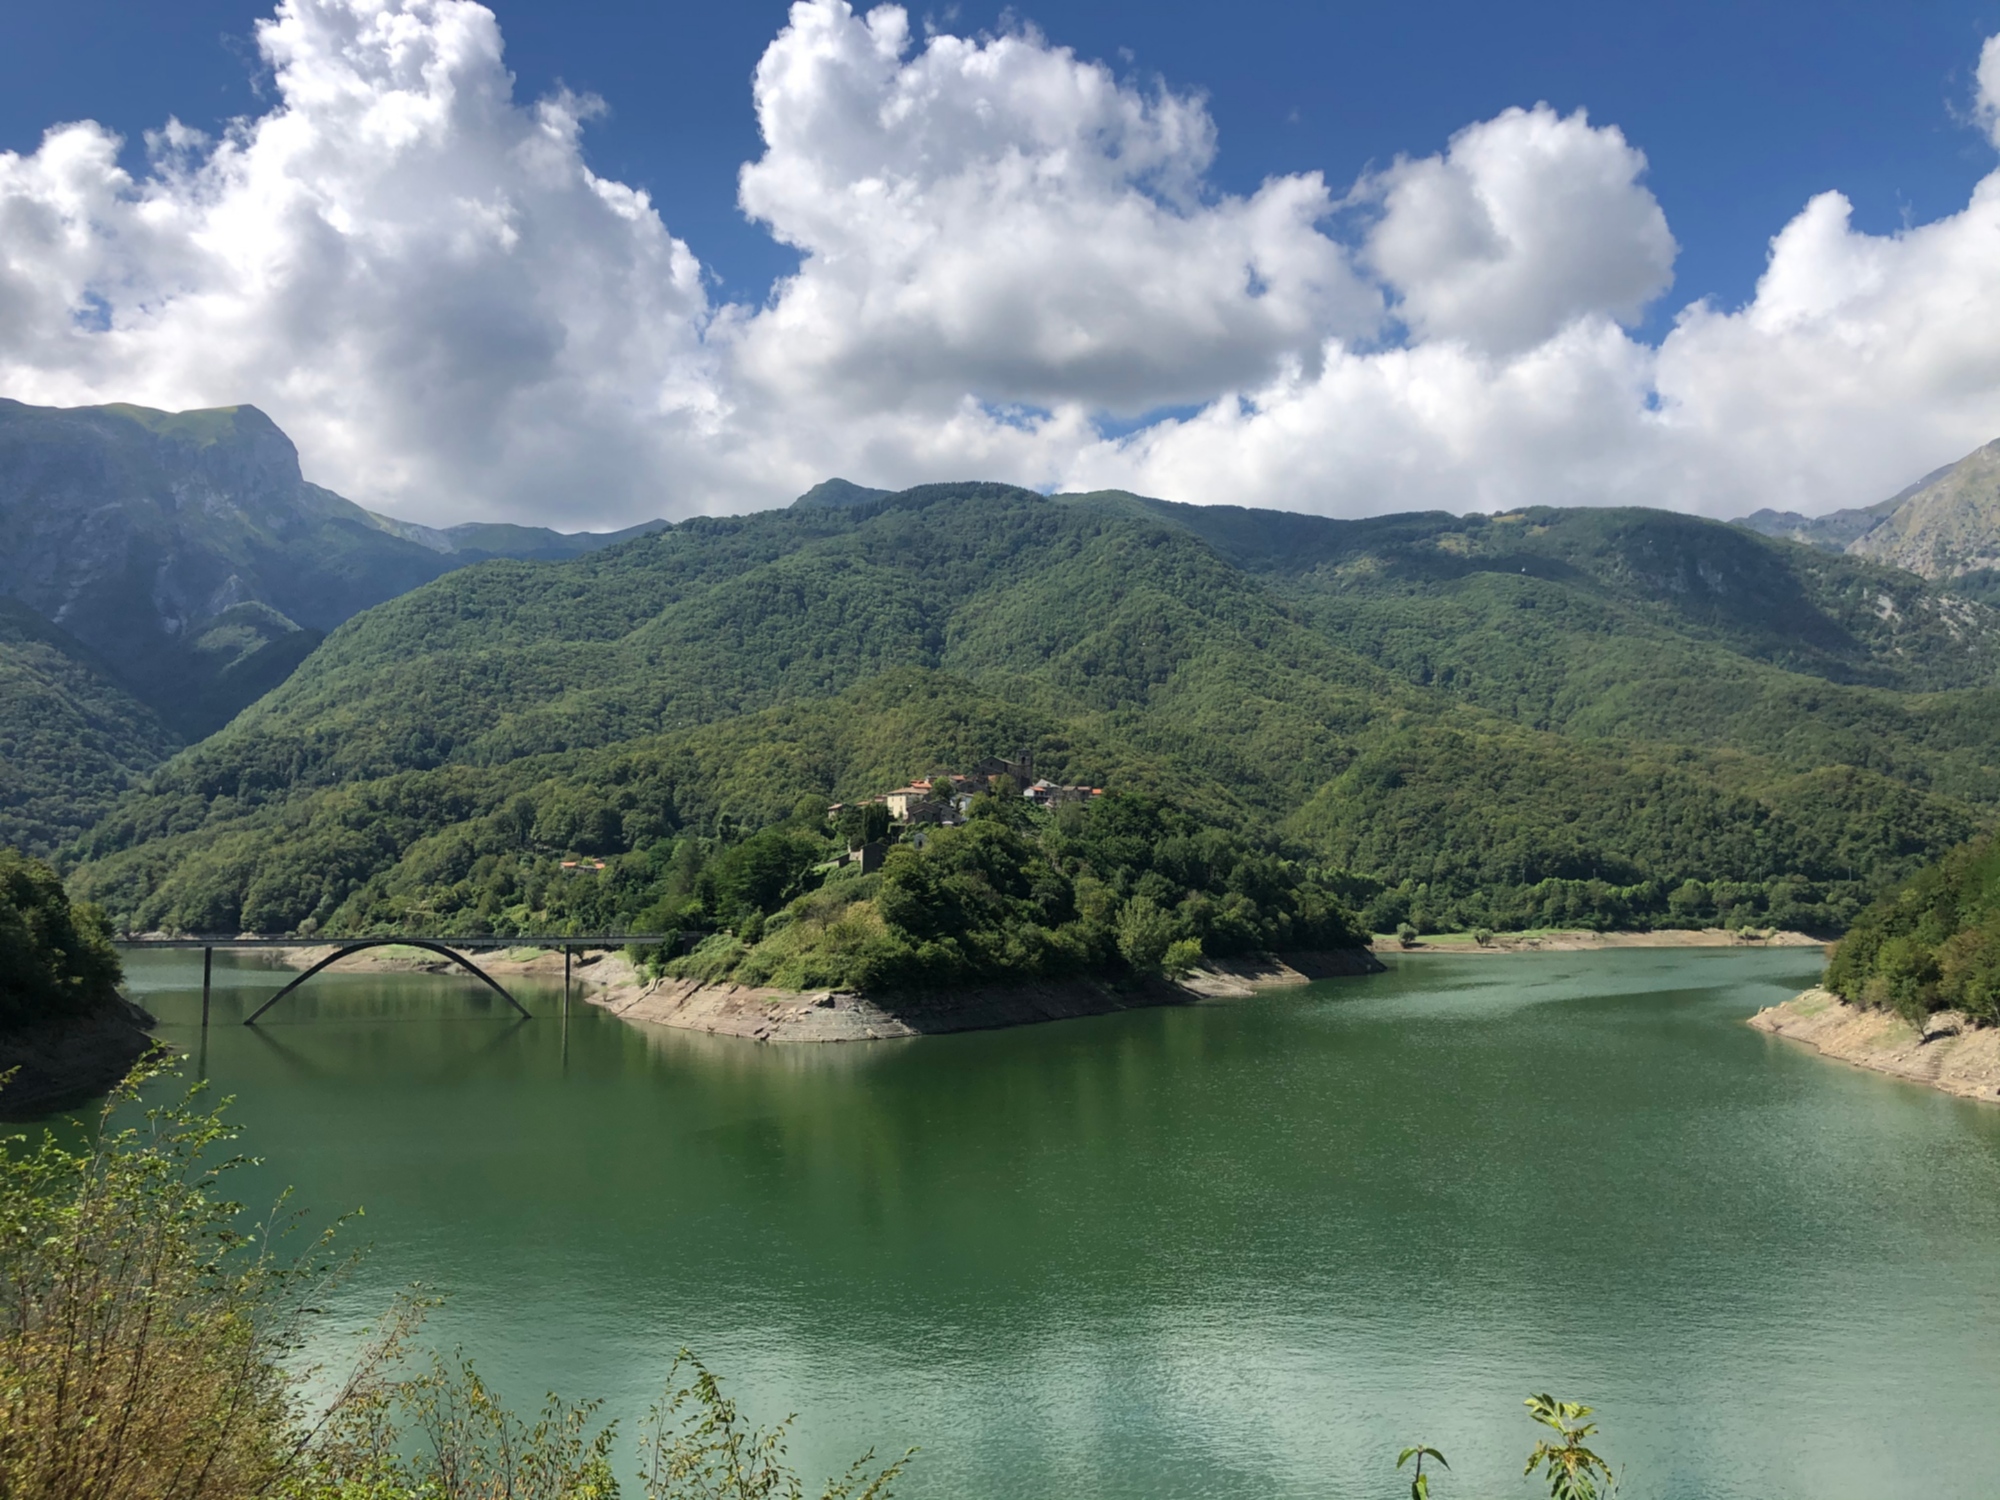 Il lago di Vagli, uno dei più importanti della Garfagnana